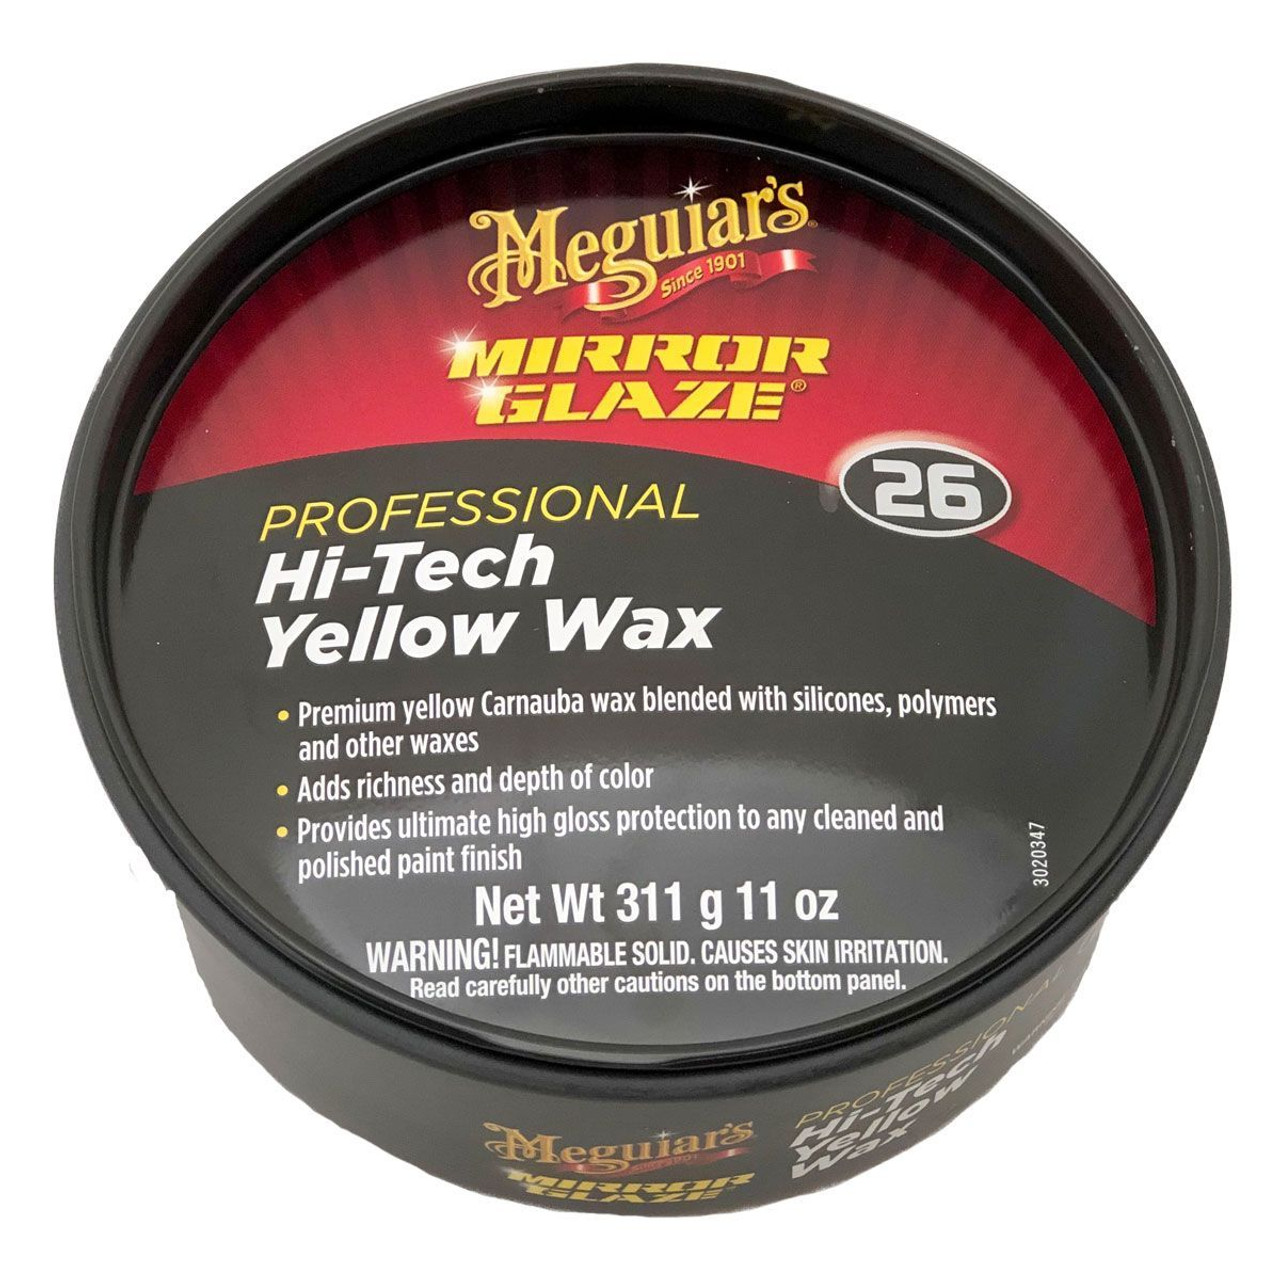 Auto Liquid Wax Meguiar's Hi-Tech Yellow Wax 26 - M2616 - Pro